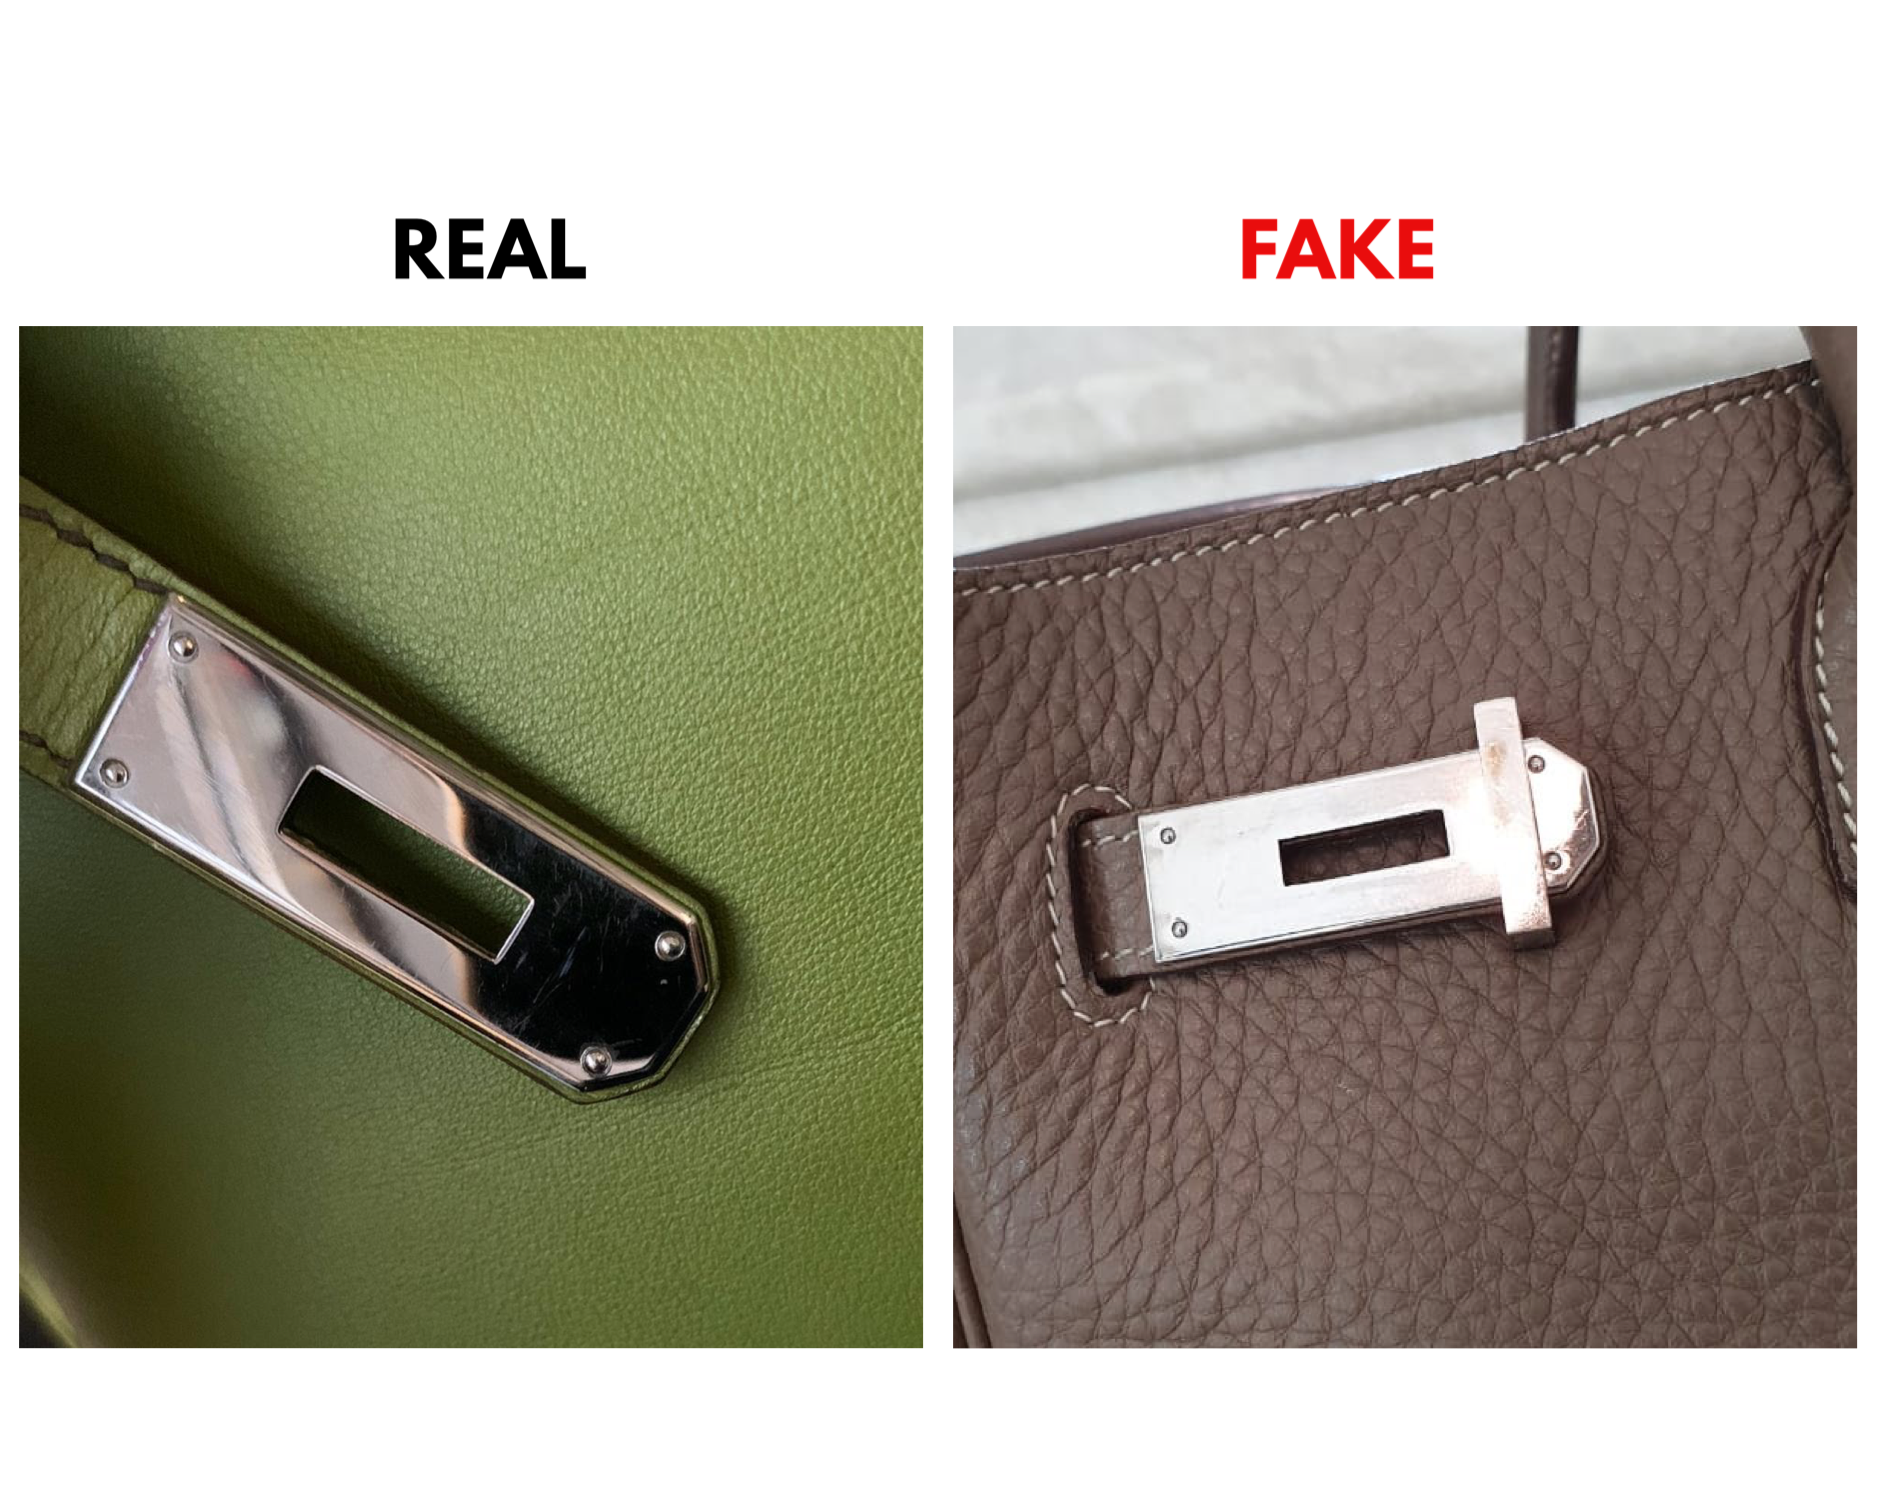 hermes bag original vs fake